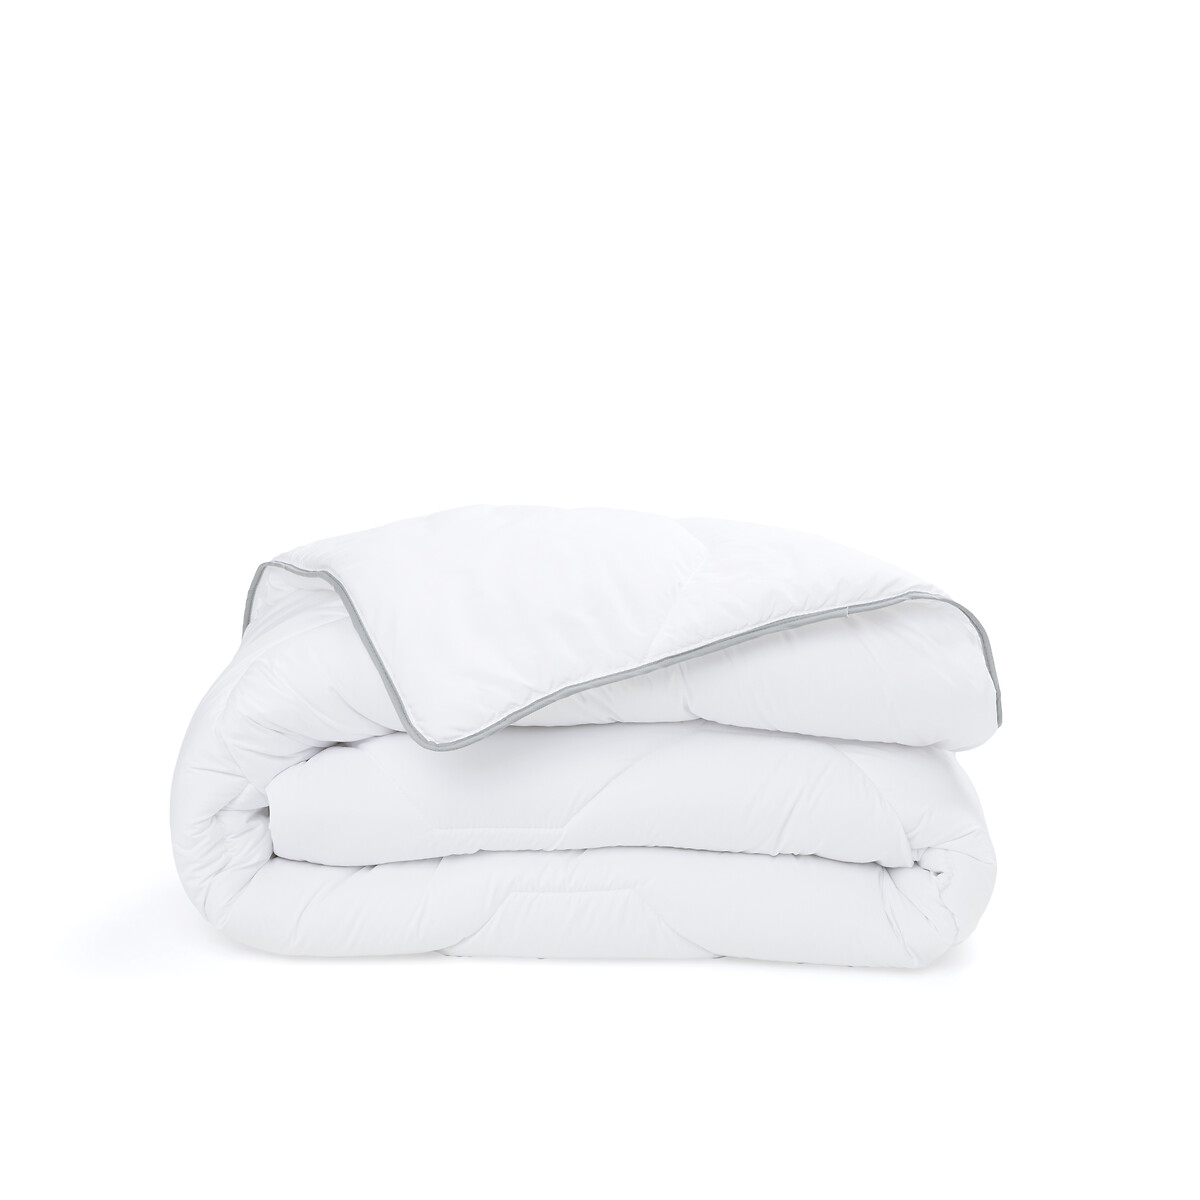 Одеяло из синтетического материала для прохладных помещений Confort htel  200 x 200 см белый LaRedoute, размер 200 x 200 см - фото 2